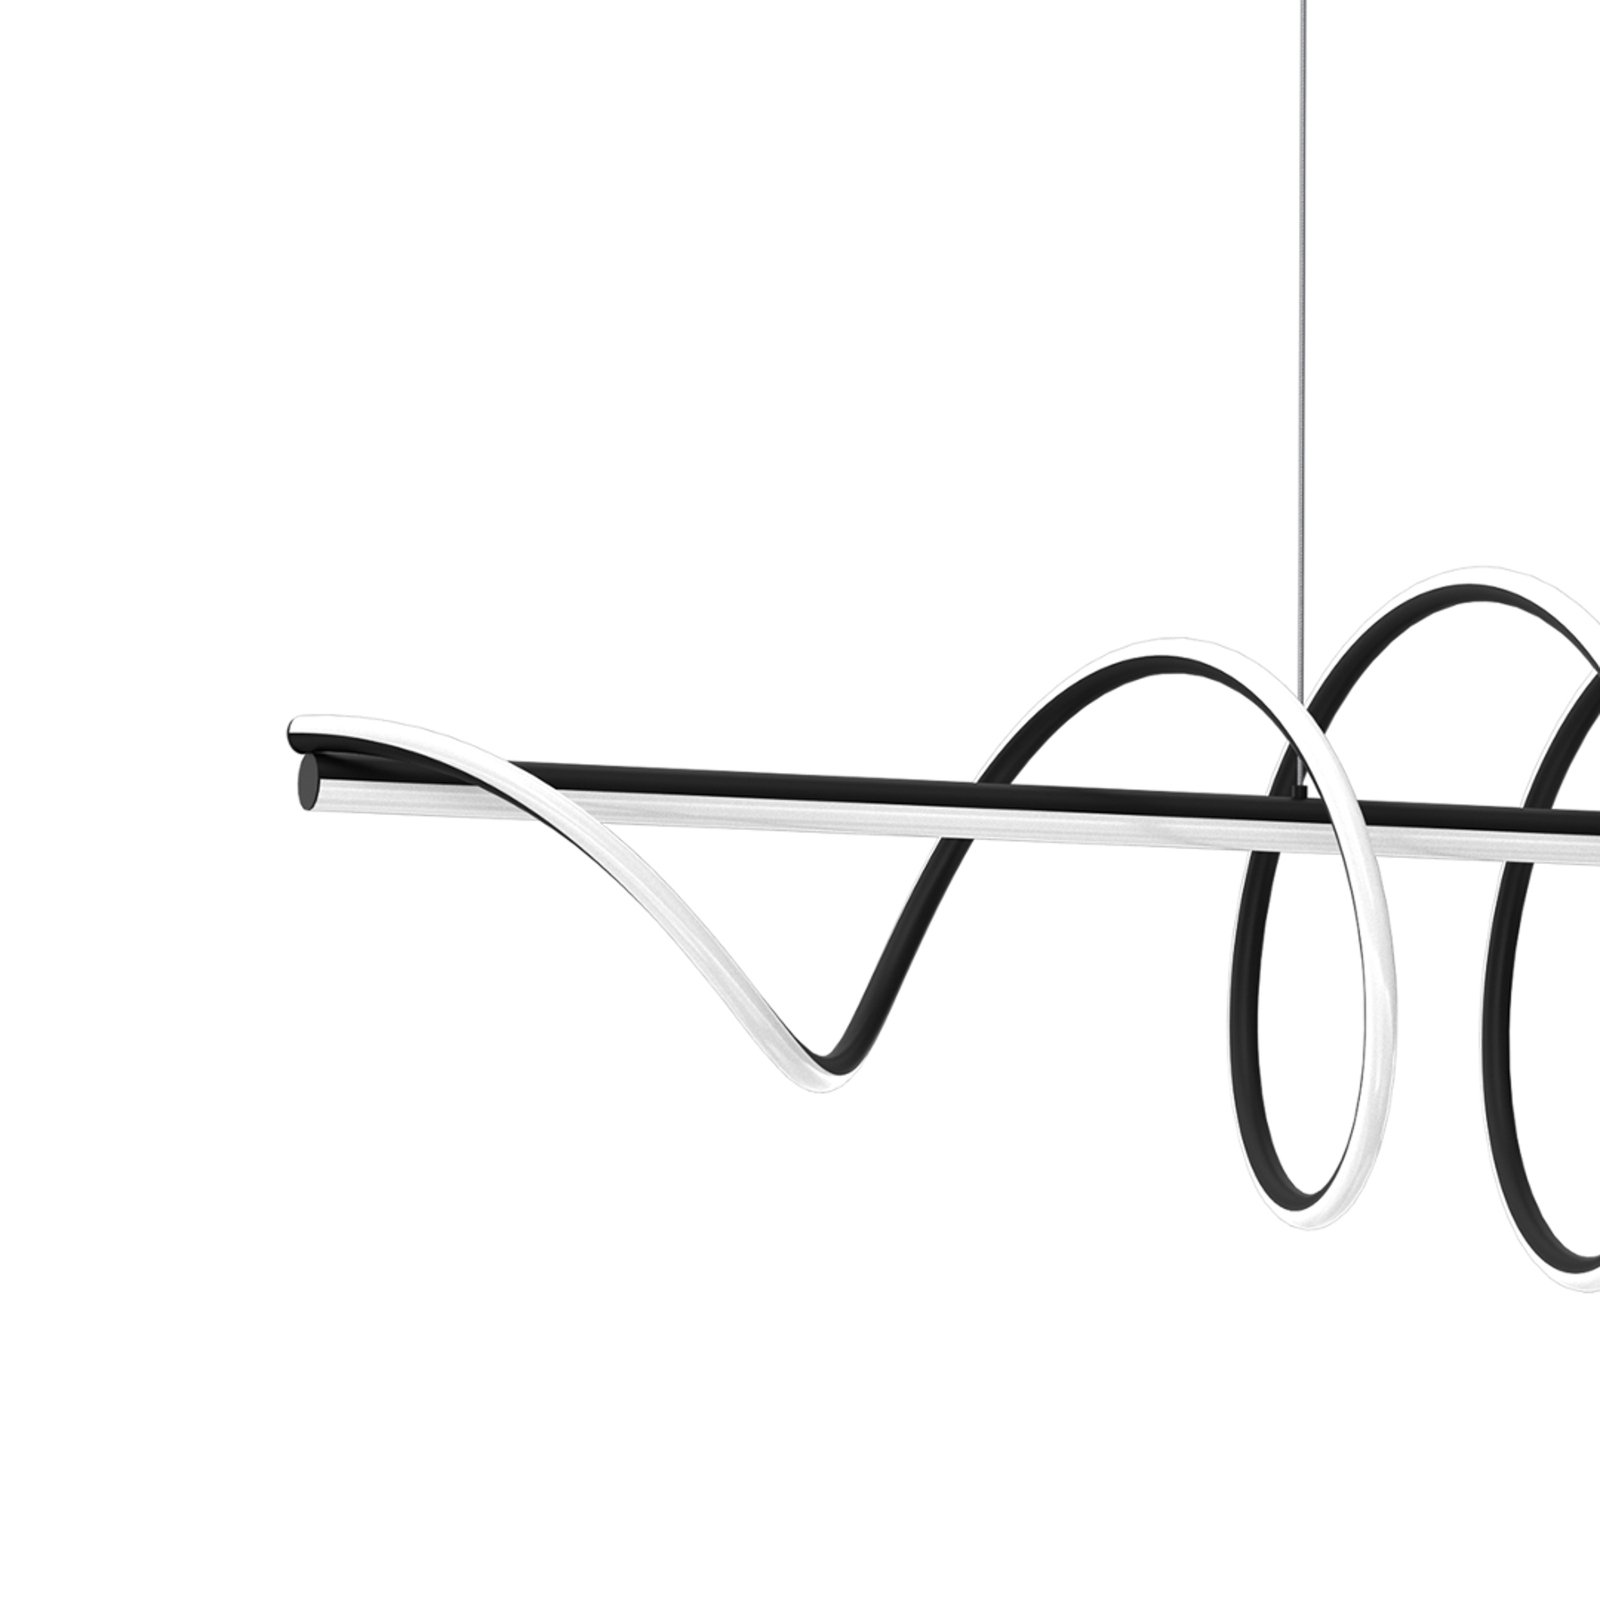 LED-hänglampa Twist, svart plast, 30 W, längd 110 cm